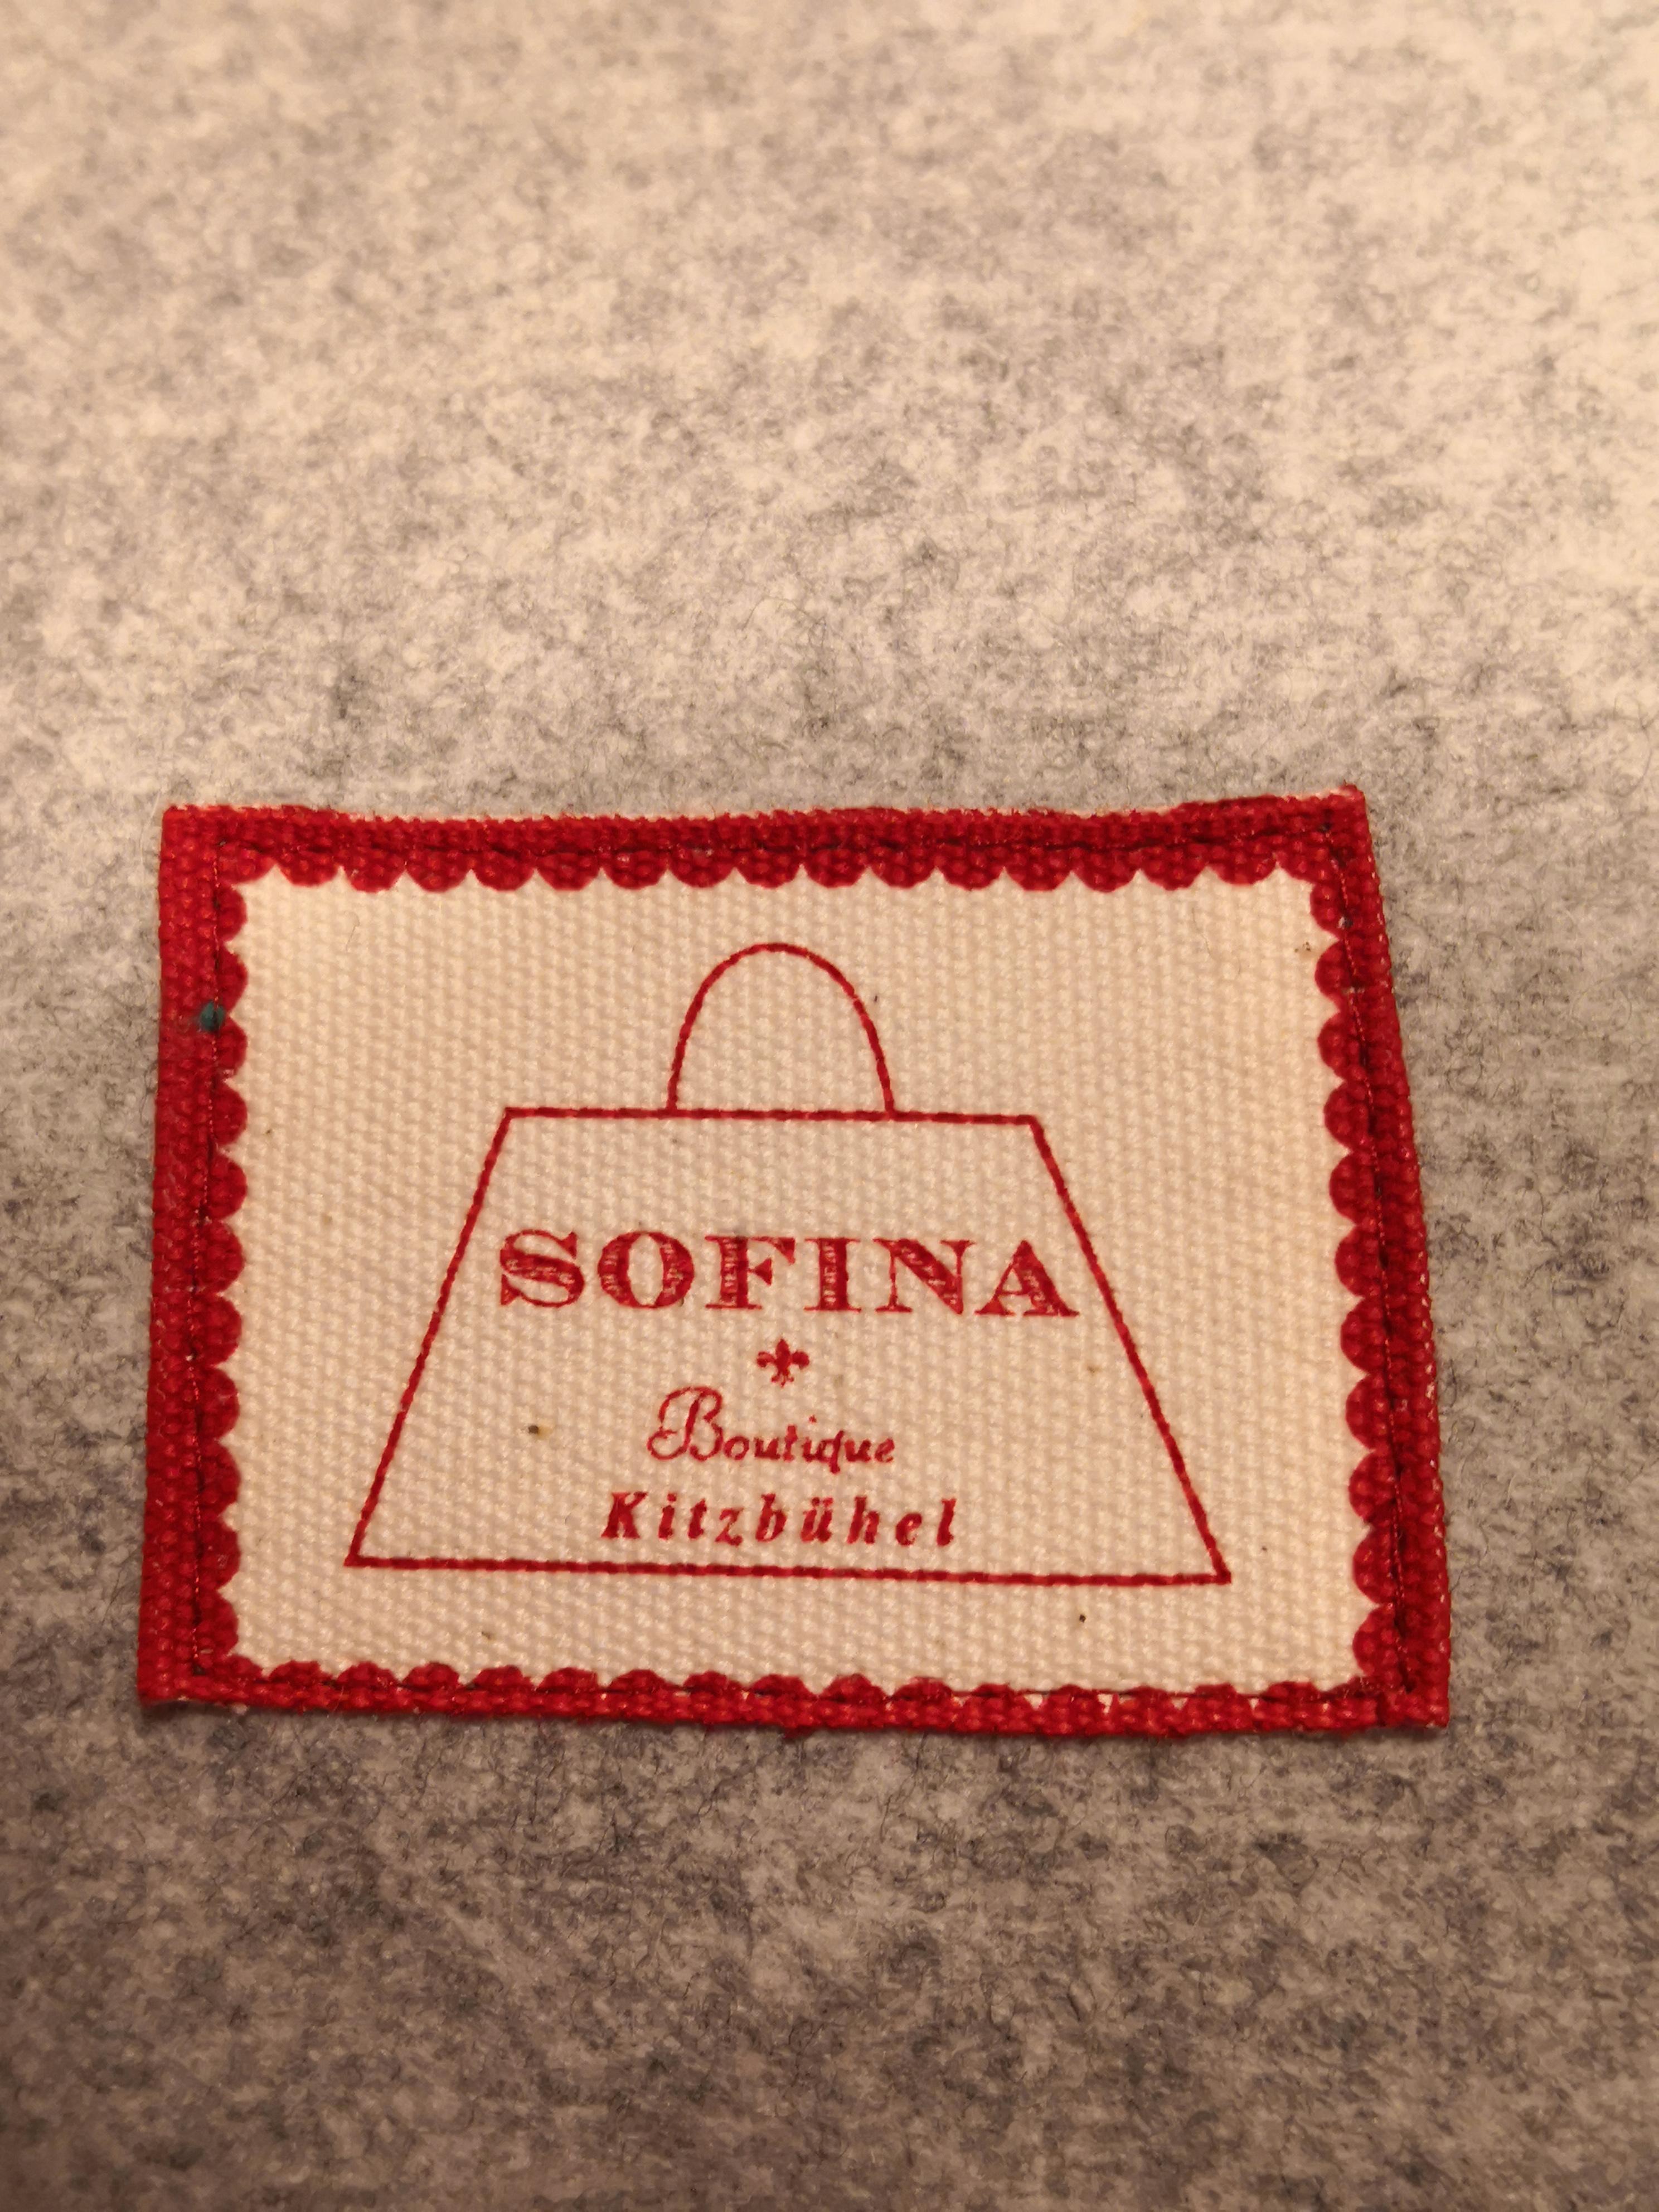 Fait main Sofina Boutique Kitzbuehel velours coussin de style campagnard fait à la main en vente